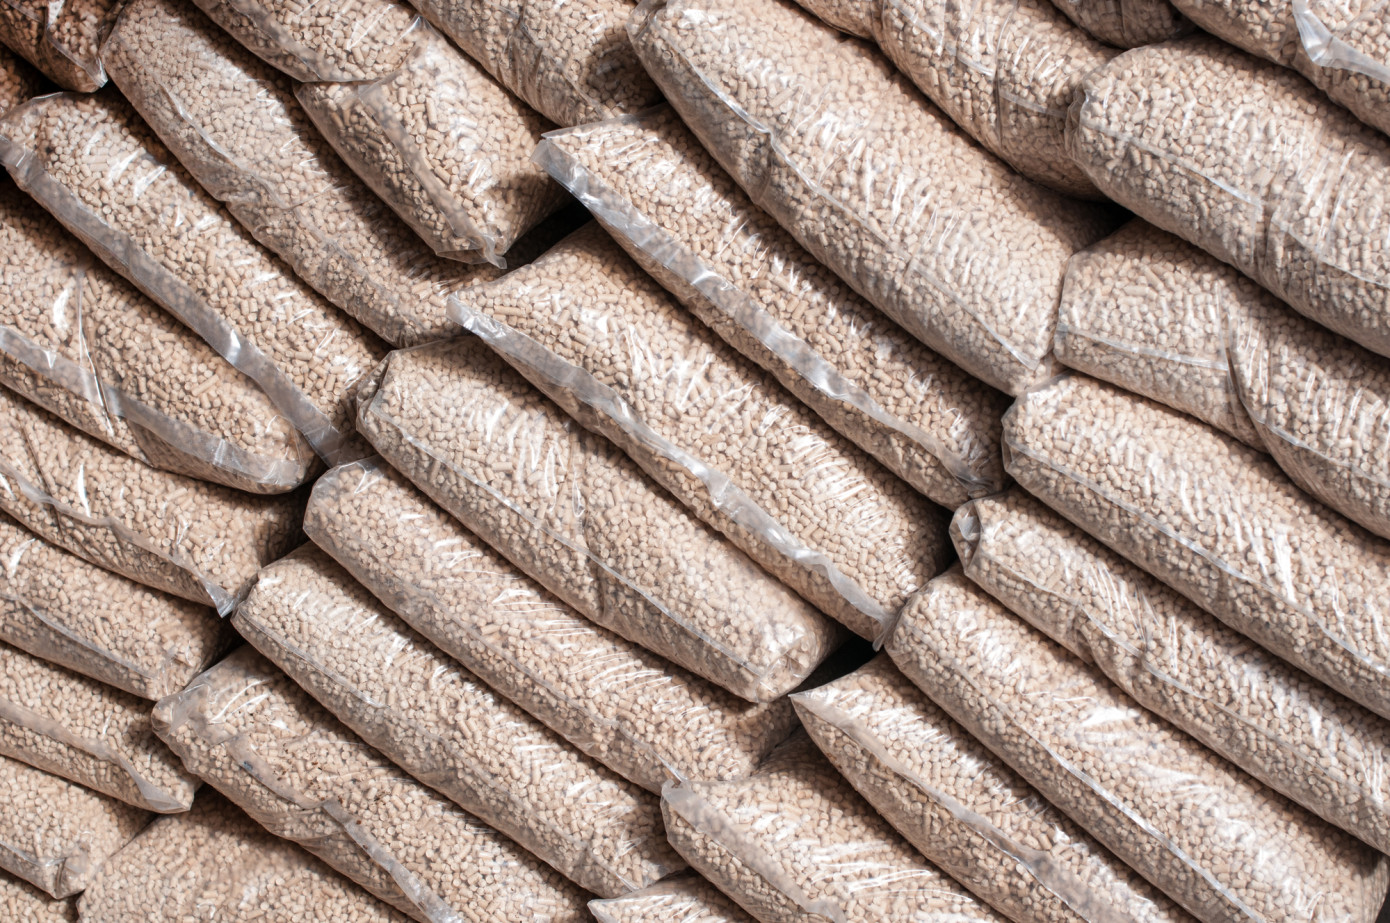 В феврале цена на импортные древесные пеллеты в Великобритании увеличилась на 6%